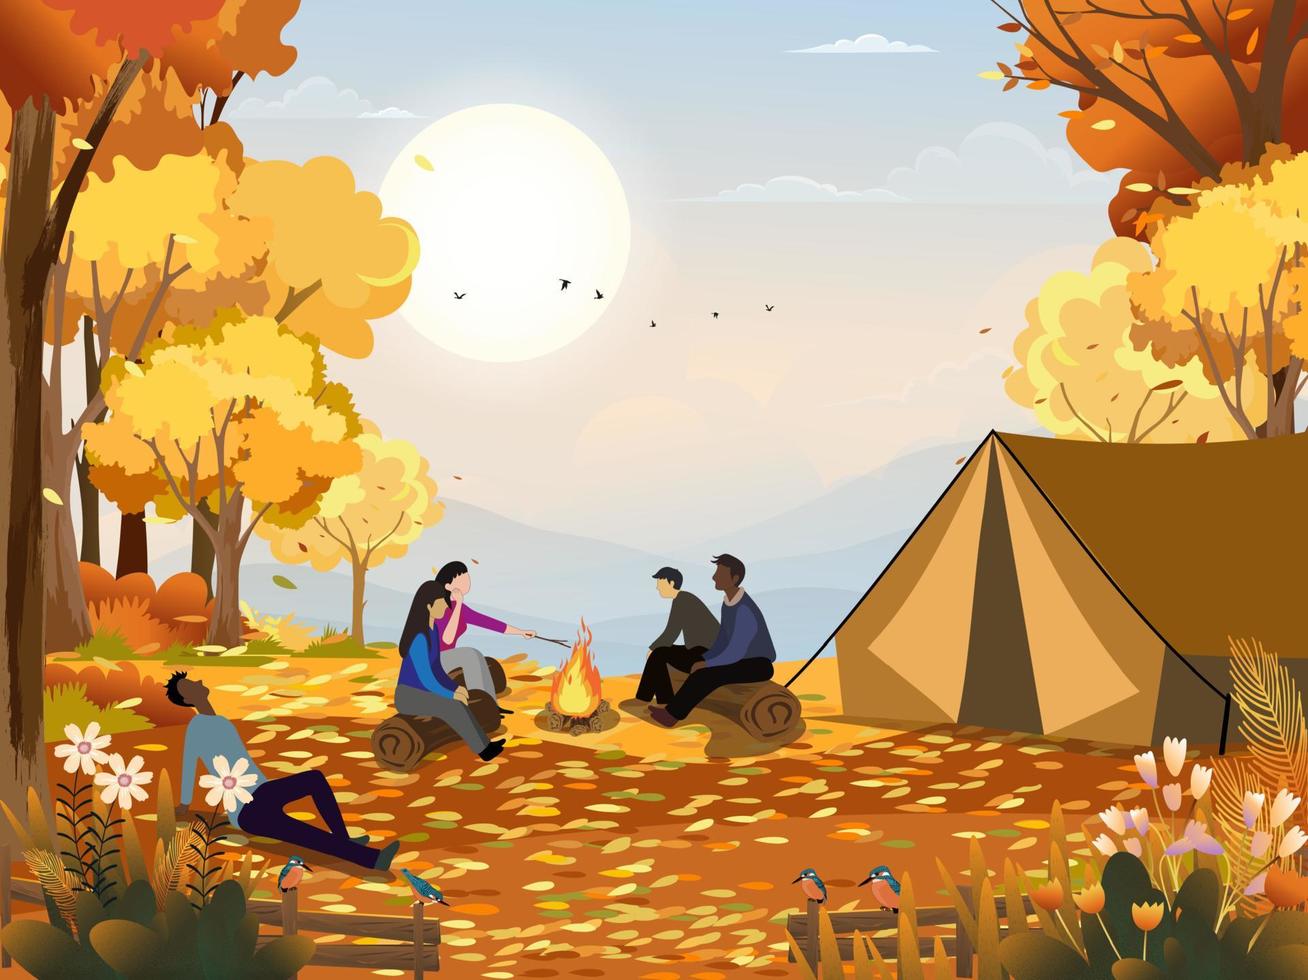 famiglia godendo vacanza campeggio a campagna nel autunno, gruppo di persone seduta vicino il tenda e fuoco di bivacco avendo divertimento parlando insieme, vettore rurale paesaggio nel autunno foresta albero con tramonto cielo